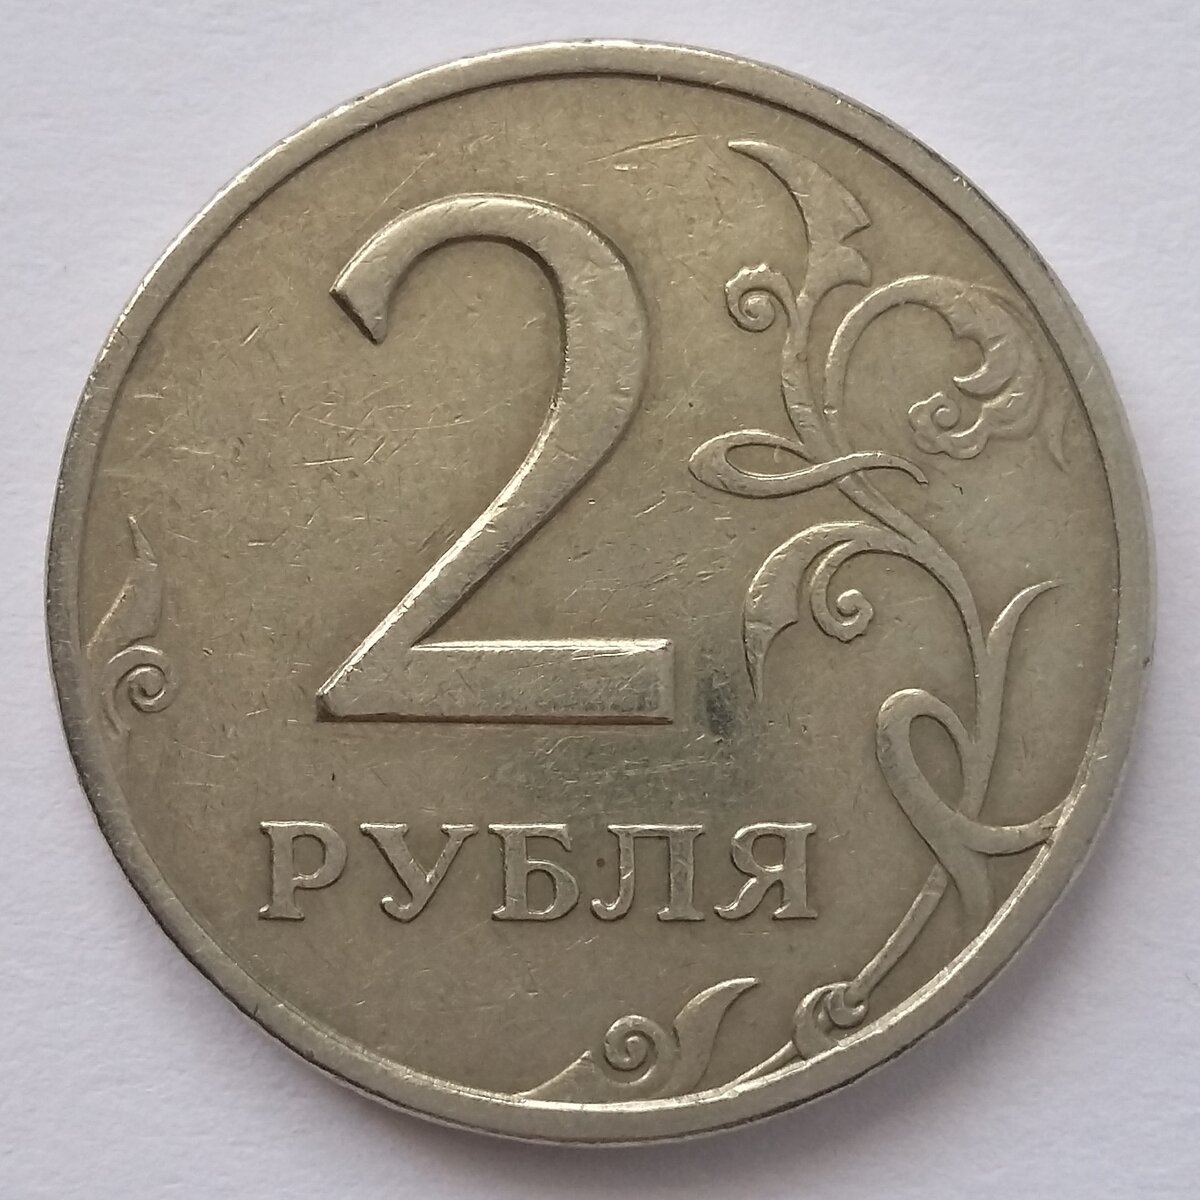 На столе лежат 2 монеты в сумме 3